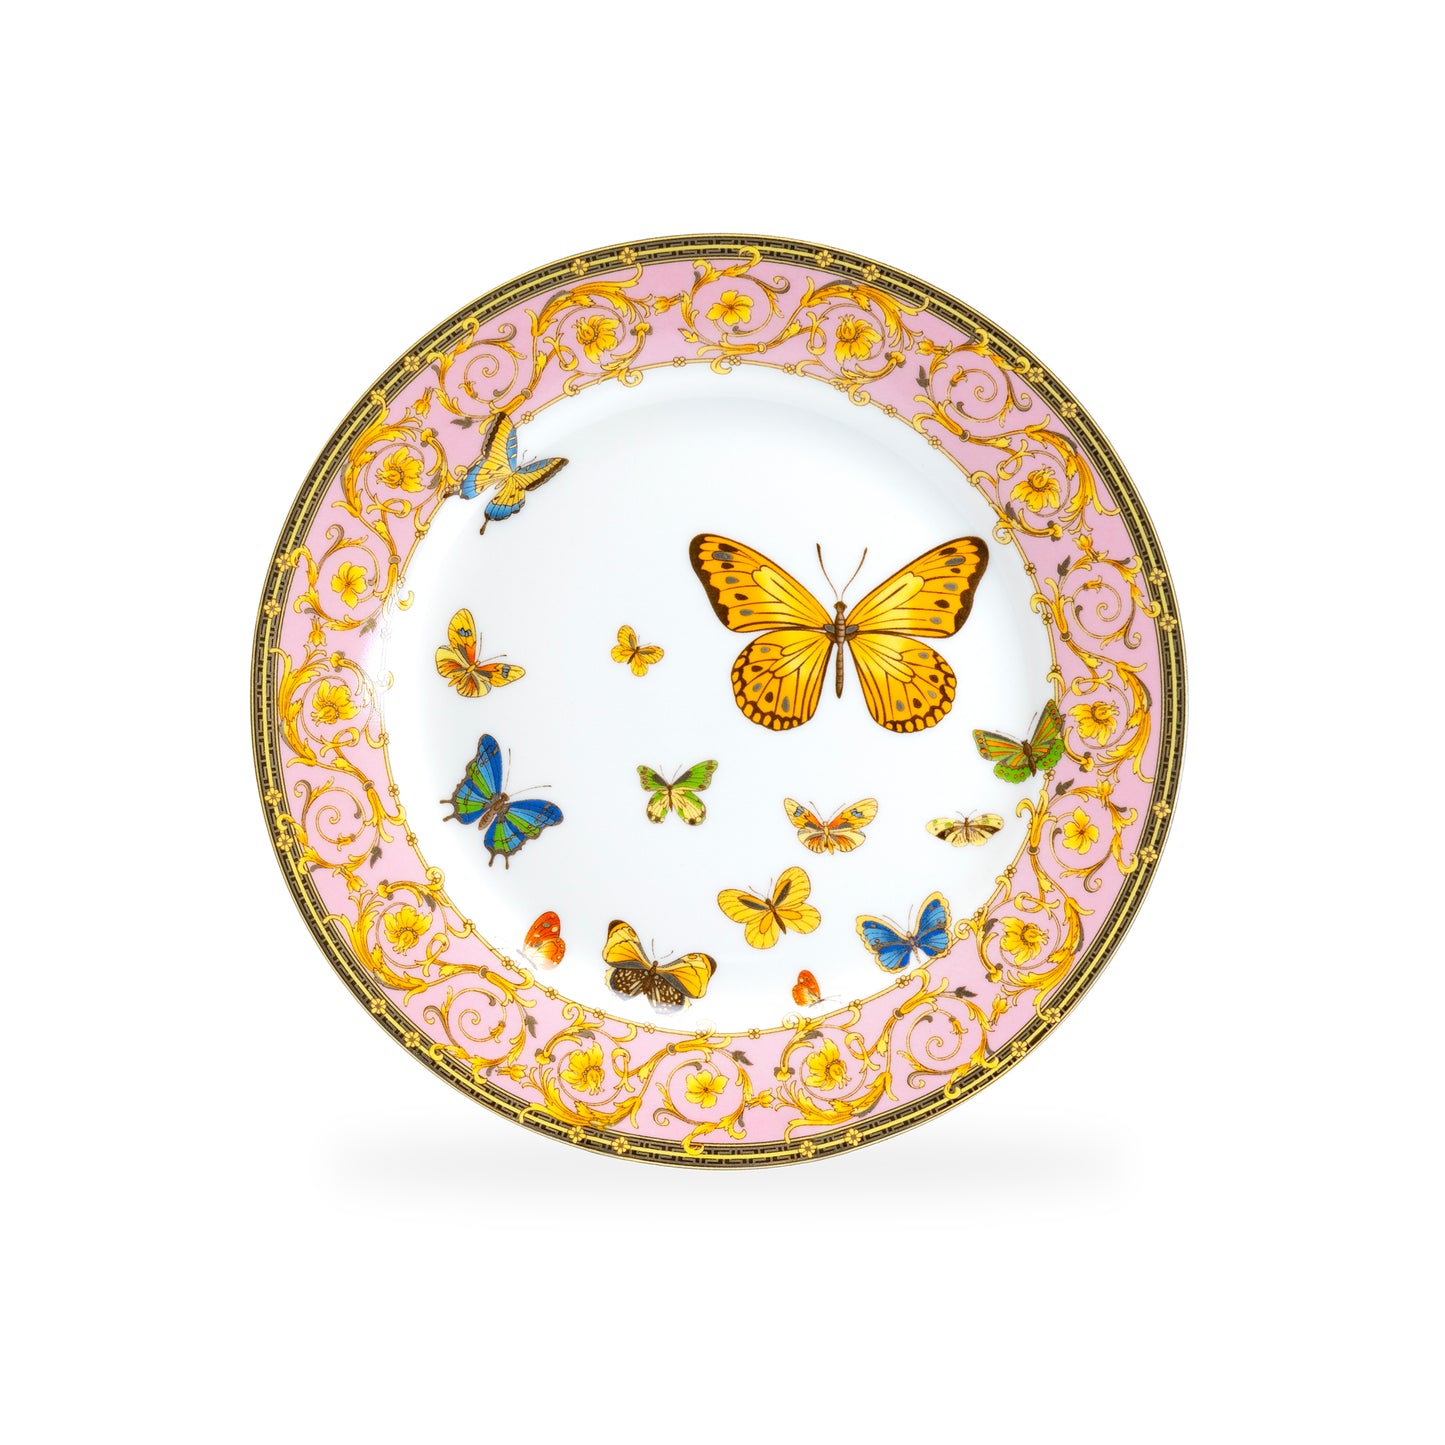 Butterflies with Pink Ornament Fine Porcelain 11-Piece Tea Set